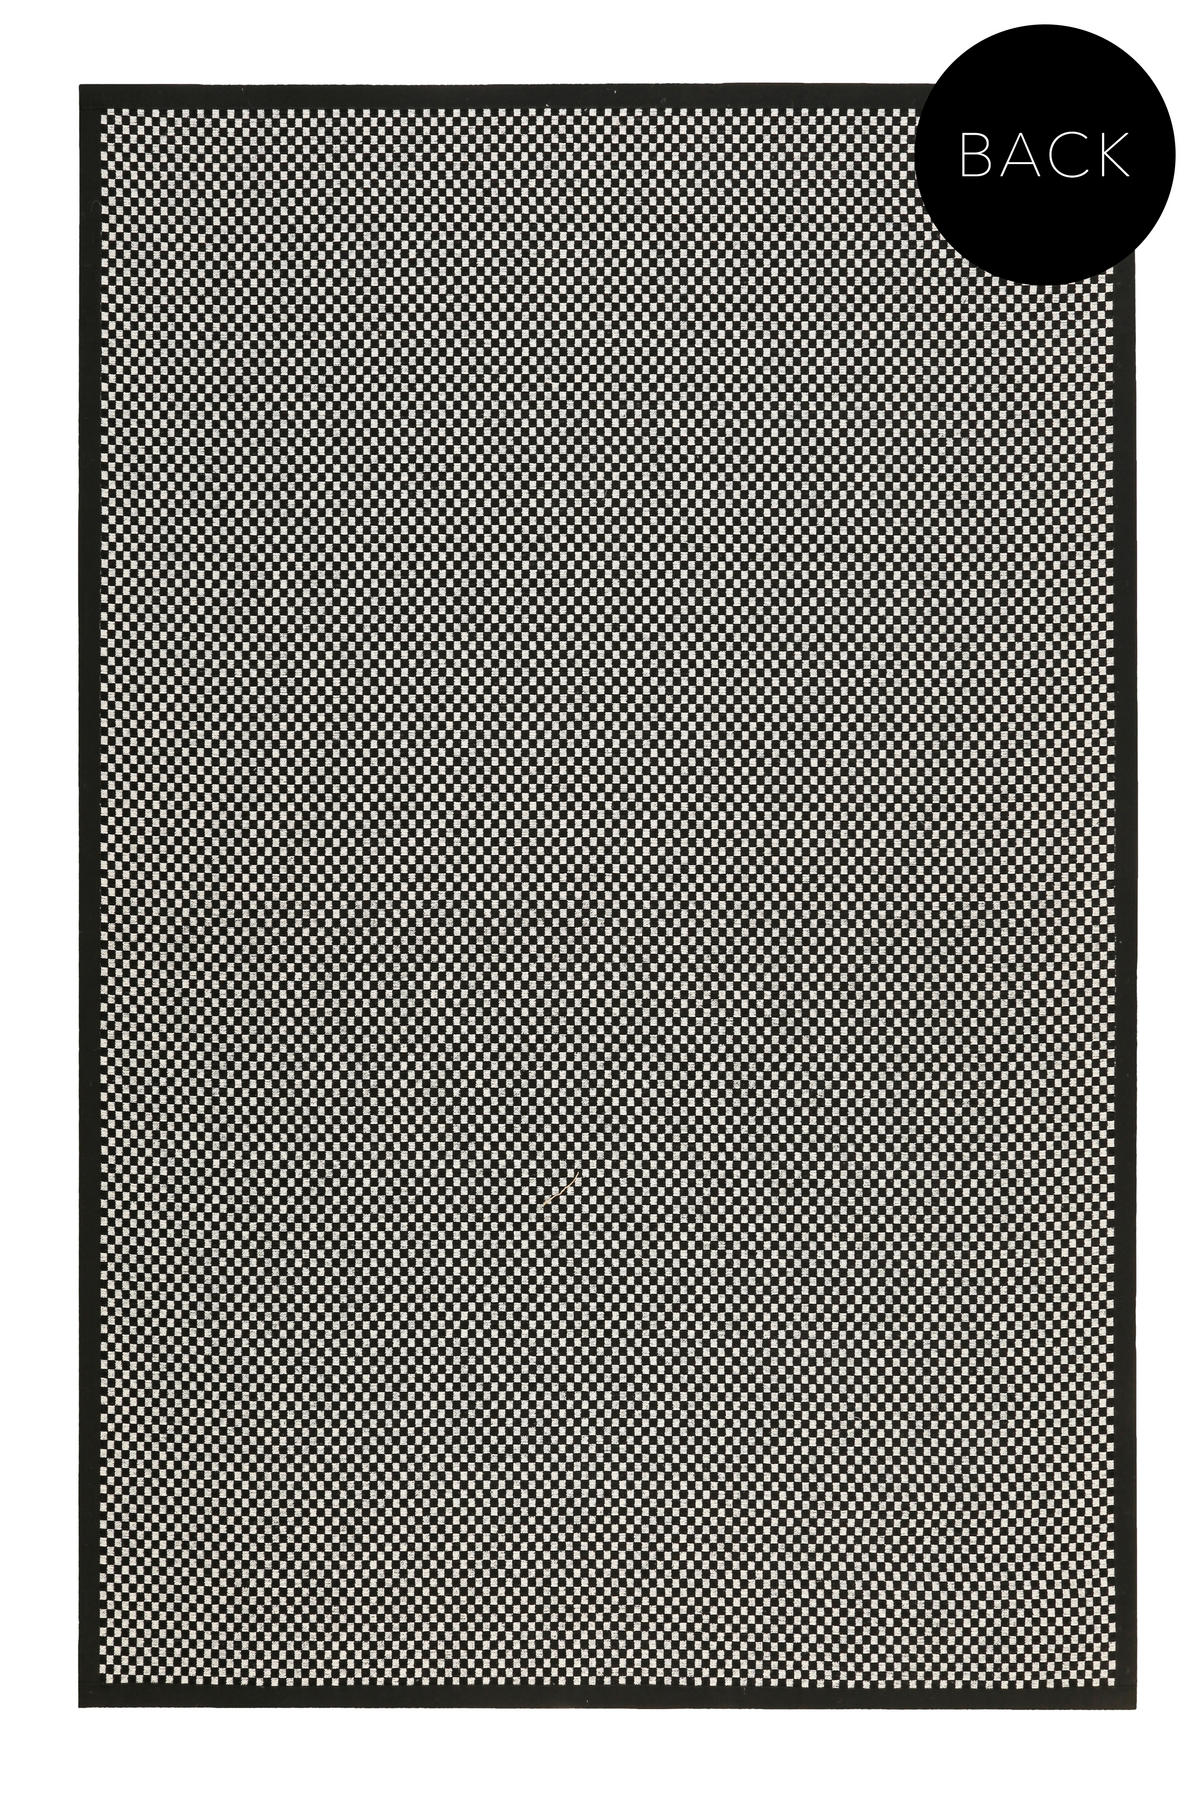 HANDWEBTEPPICH 80/300 cm Paulsen  - Schwarz, Trend, Textil (80/300cm) - Esprit